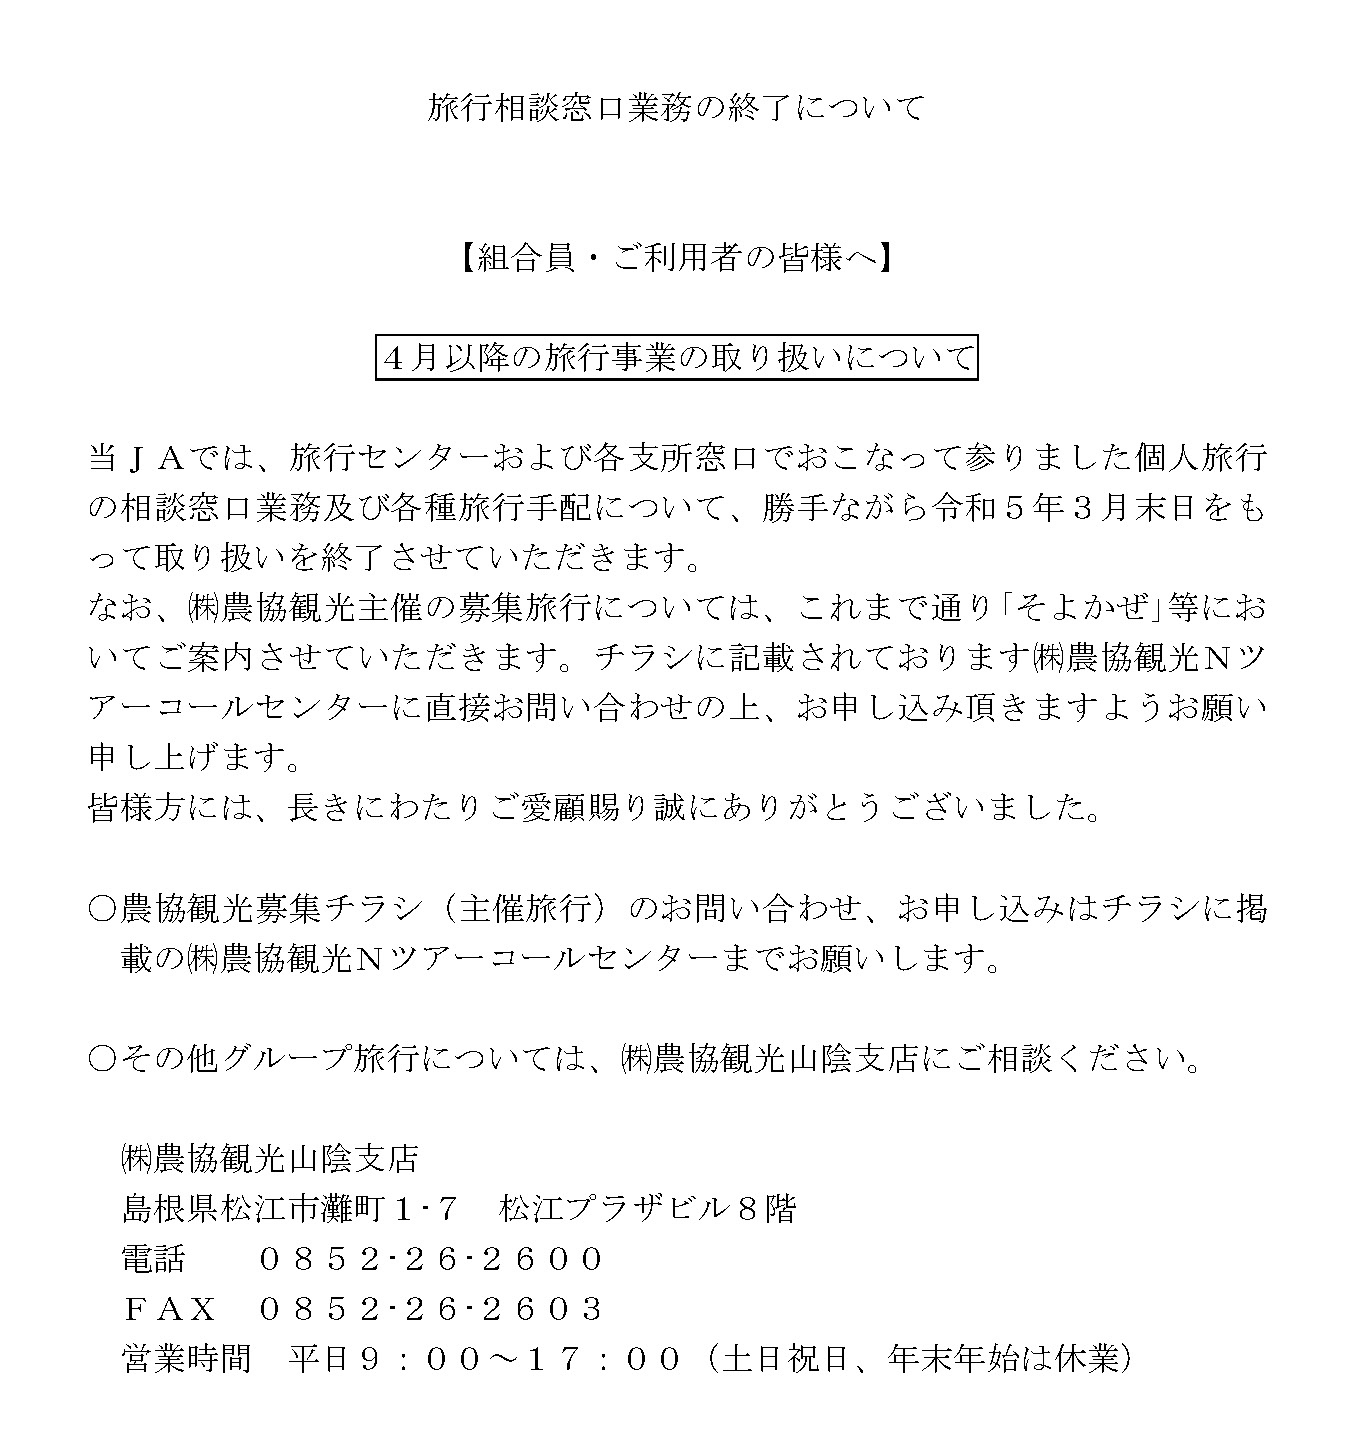 お知らせ４月以降の旅行事業の取り扱いについてJA鳥取西部 生活部